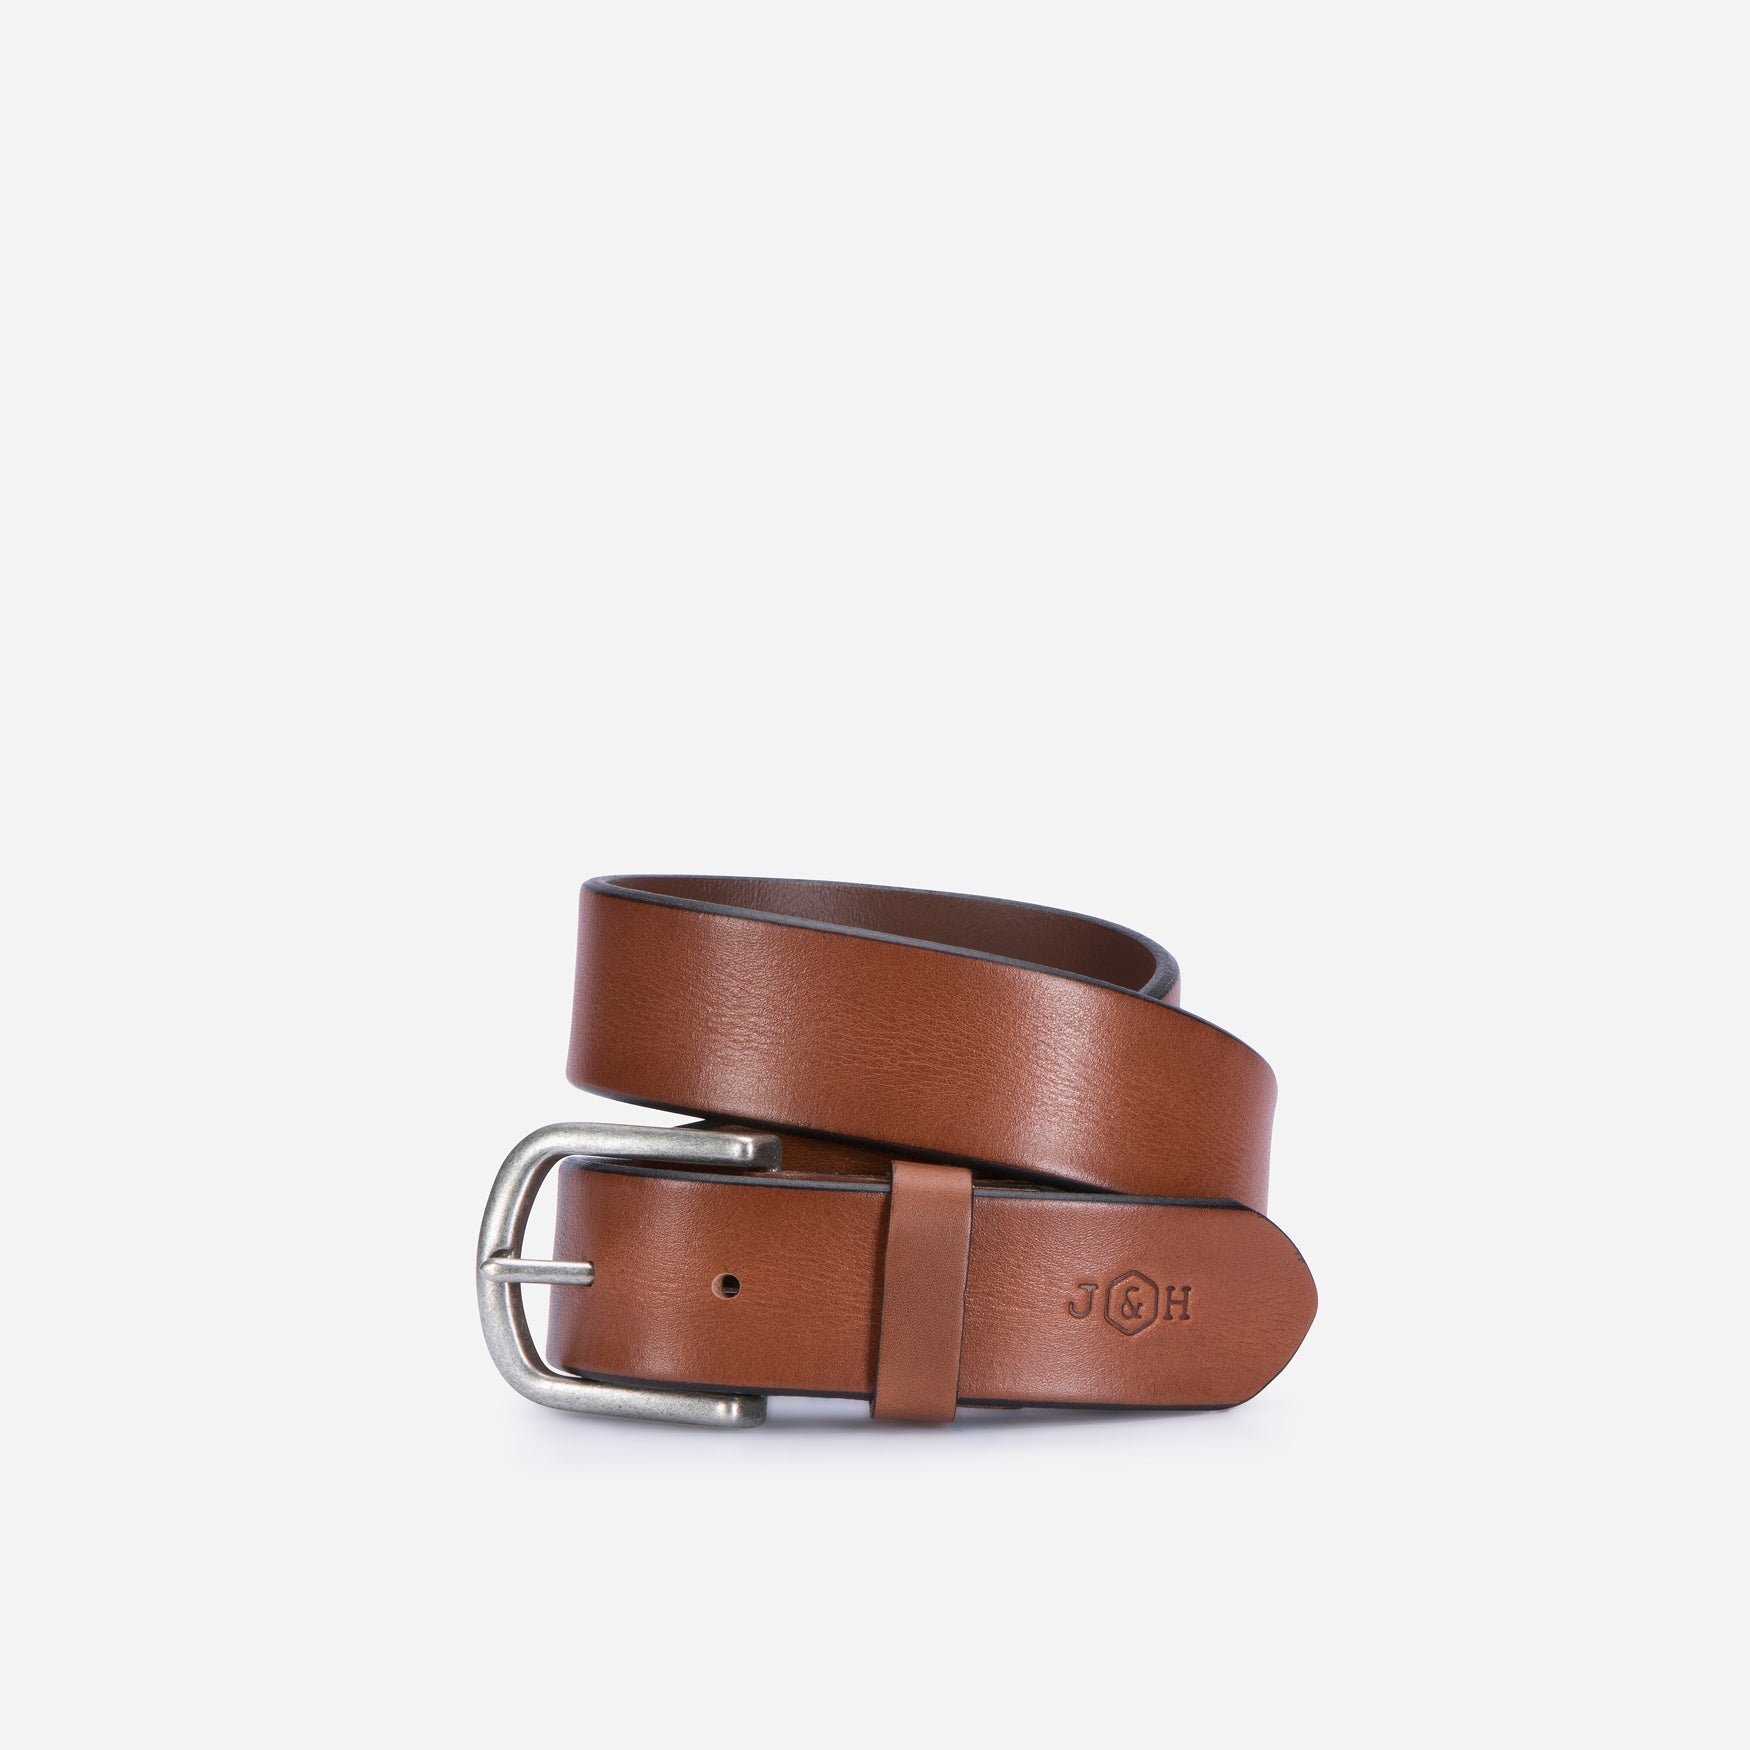 Vintage Leather Belt, Tan